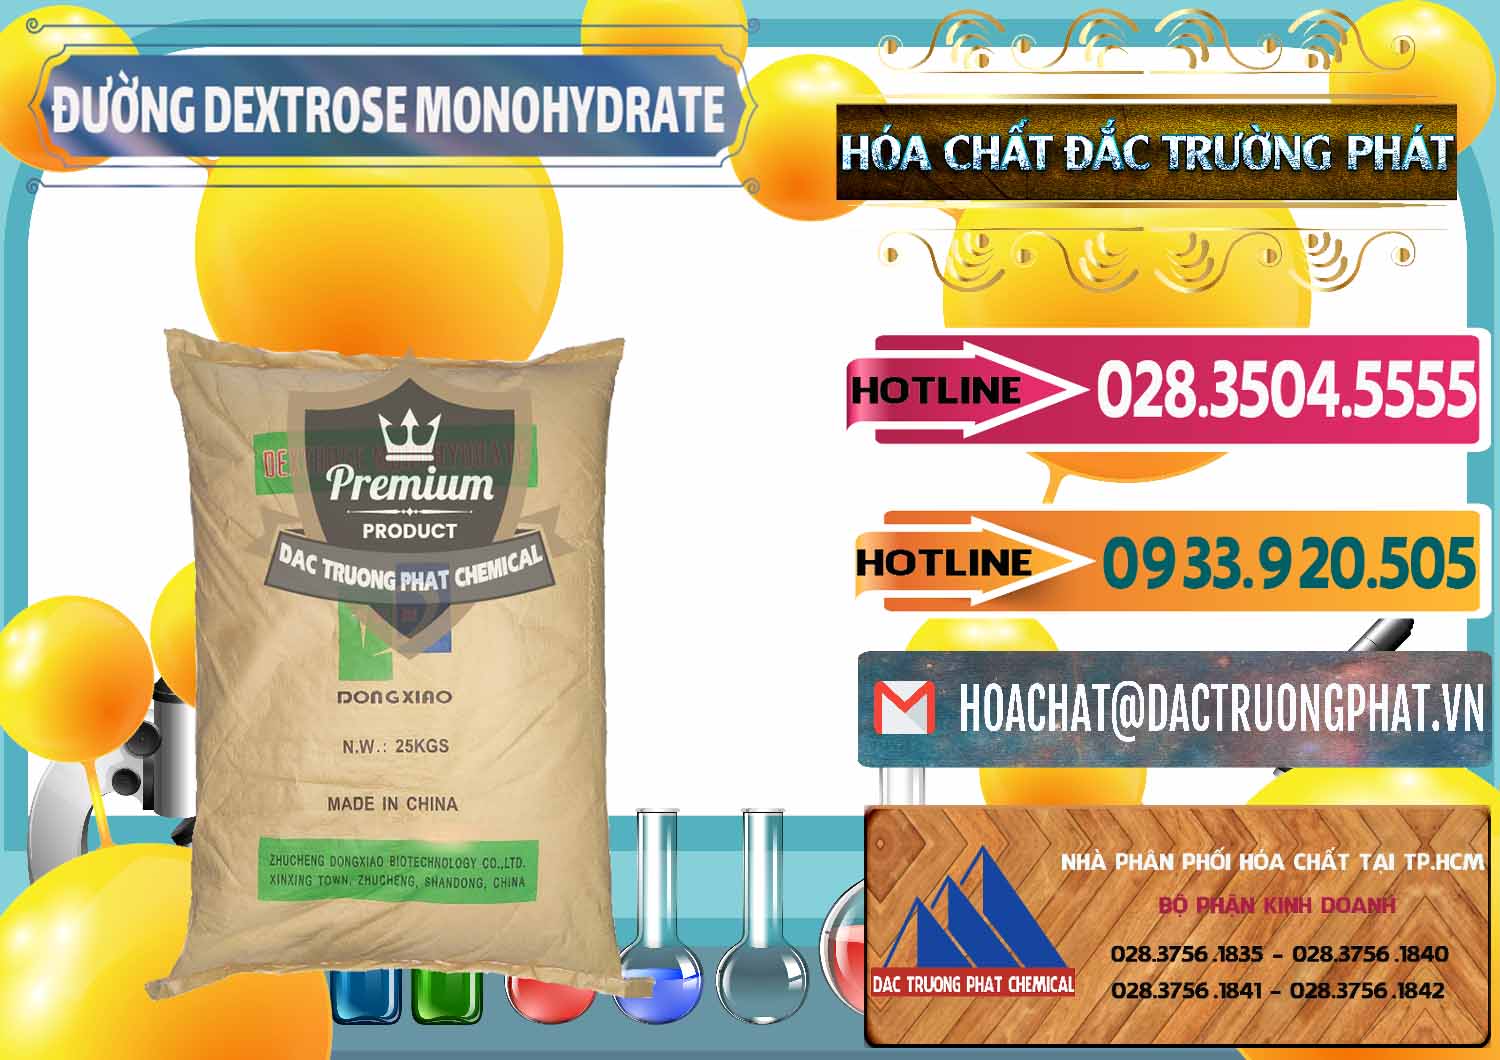 Nơi chuyên bán ( phân phối ) Đường Dextrose Monohydrate Food Grade Dongxiao Trung Quốc China - 0063 - Cty cung cấp _ bán hóa chất tại TP.HCM - dactruongphat.vn